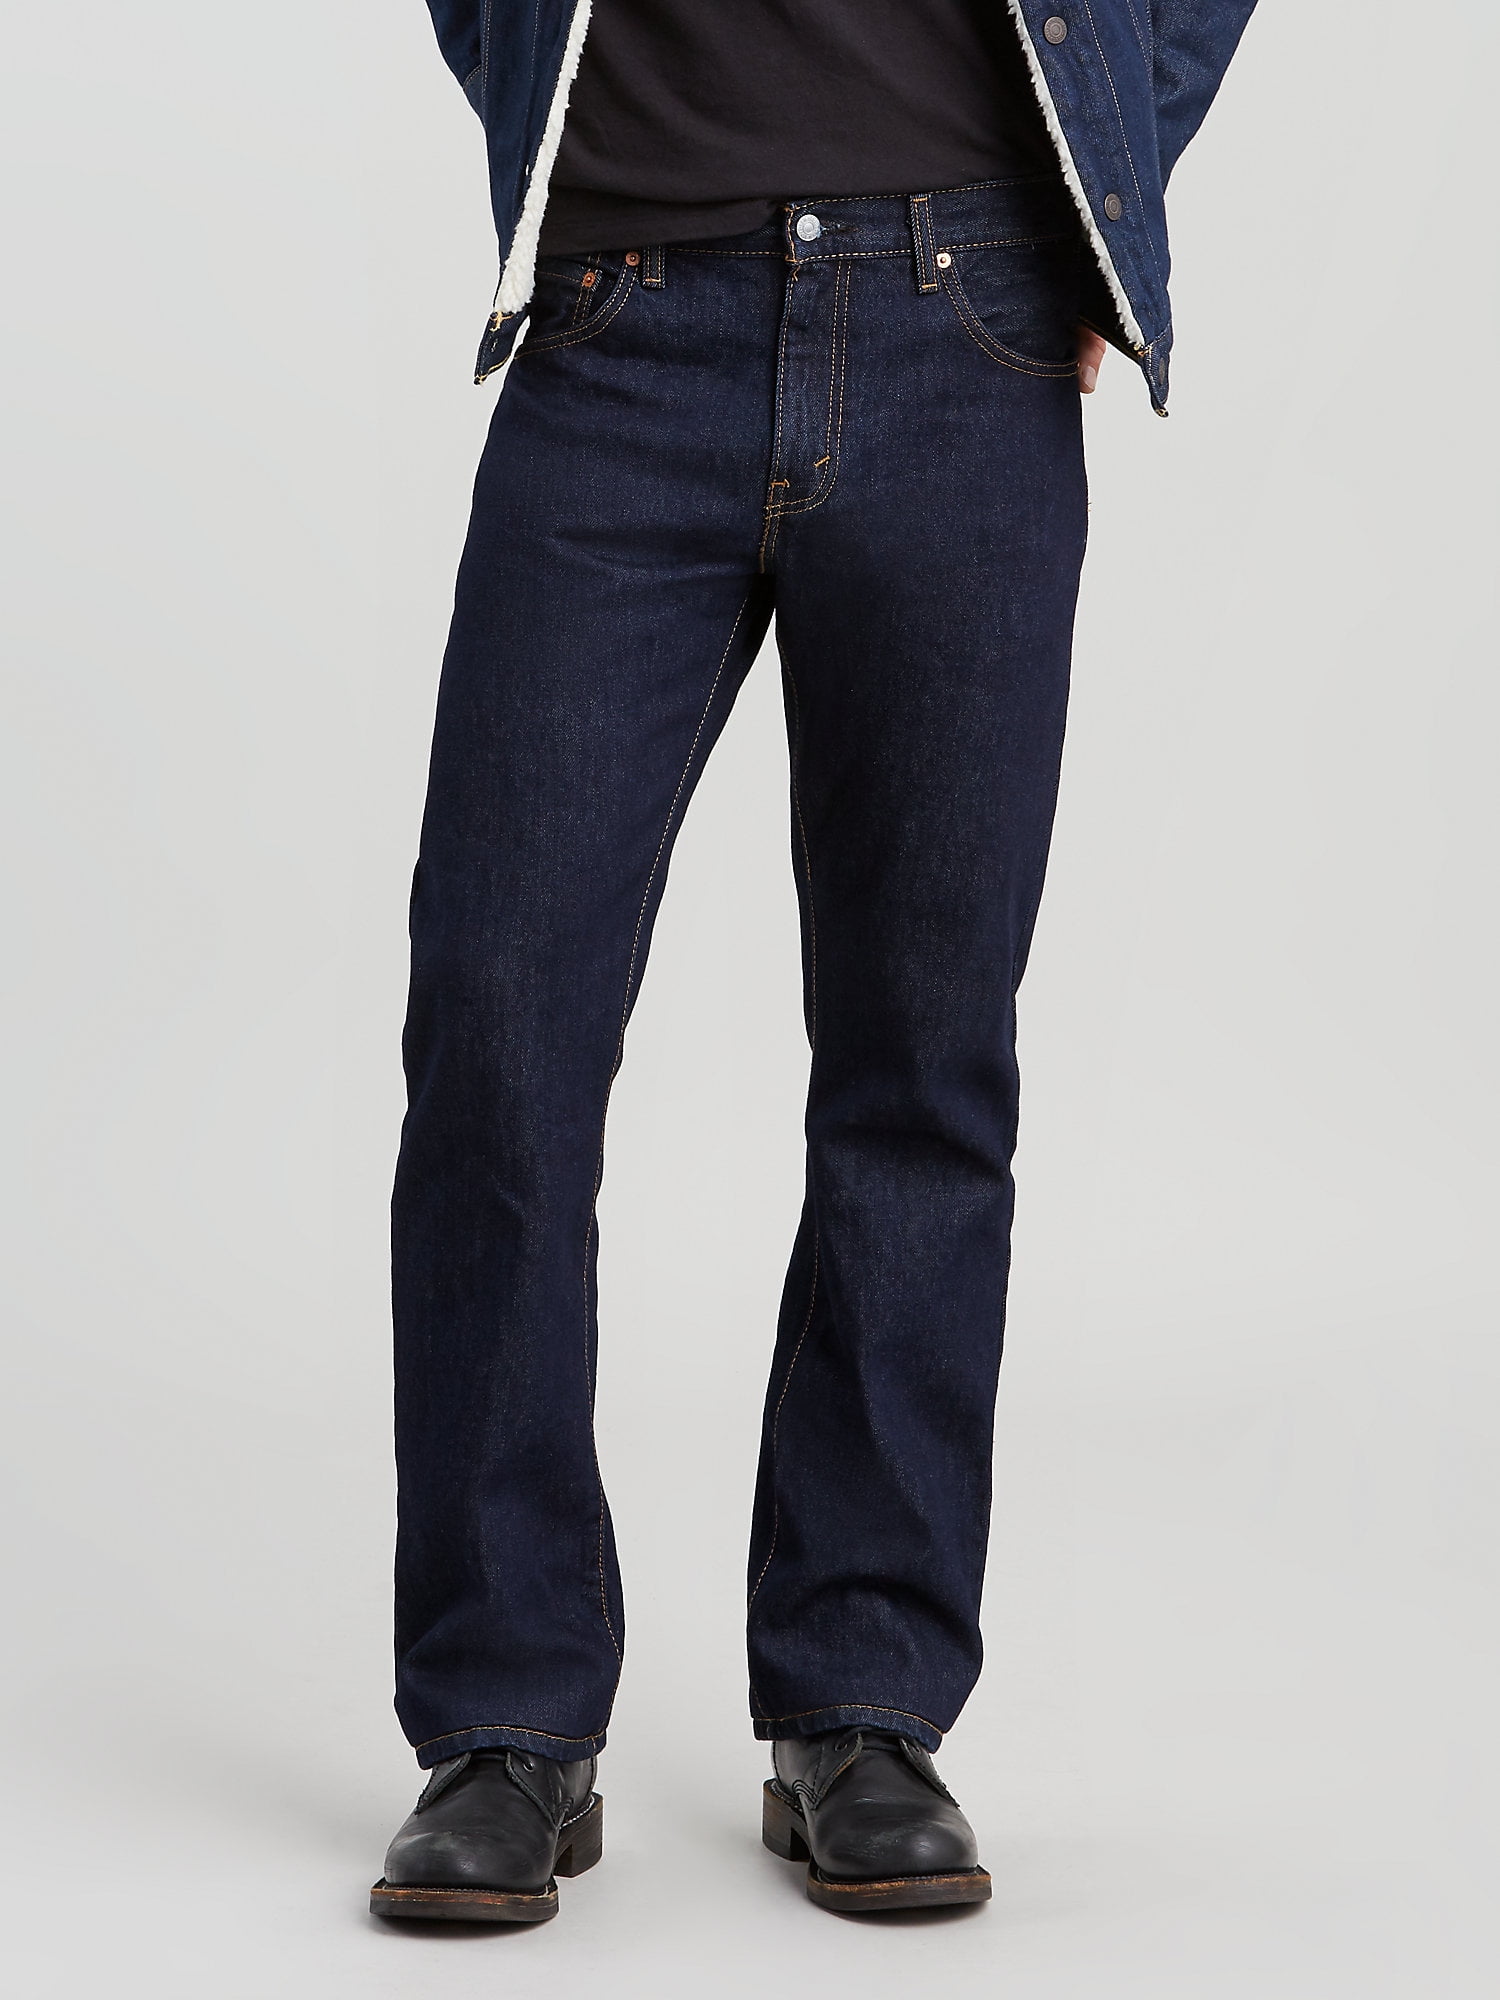 Levi's Men's 517 Bootcut Jeans - Walmart.com